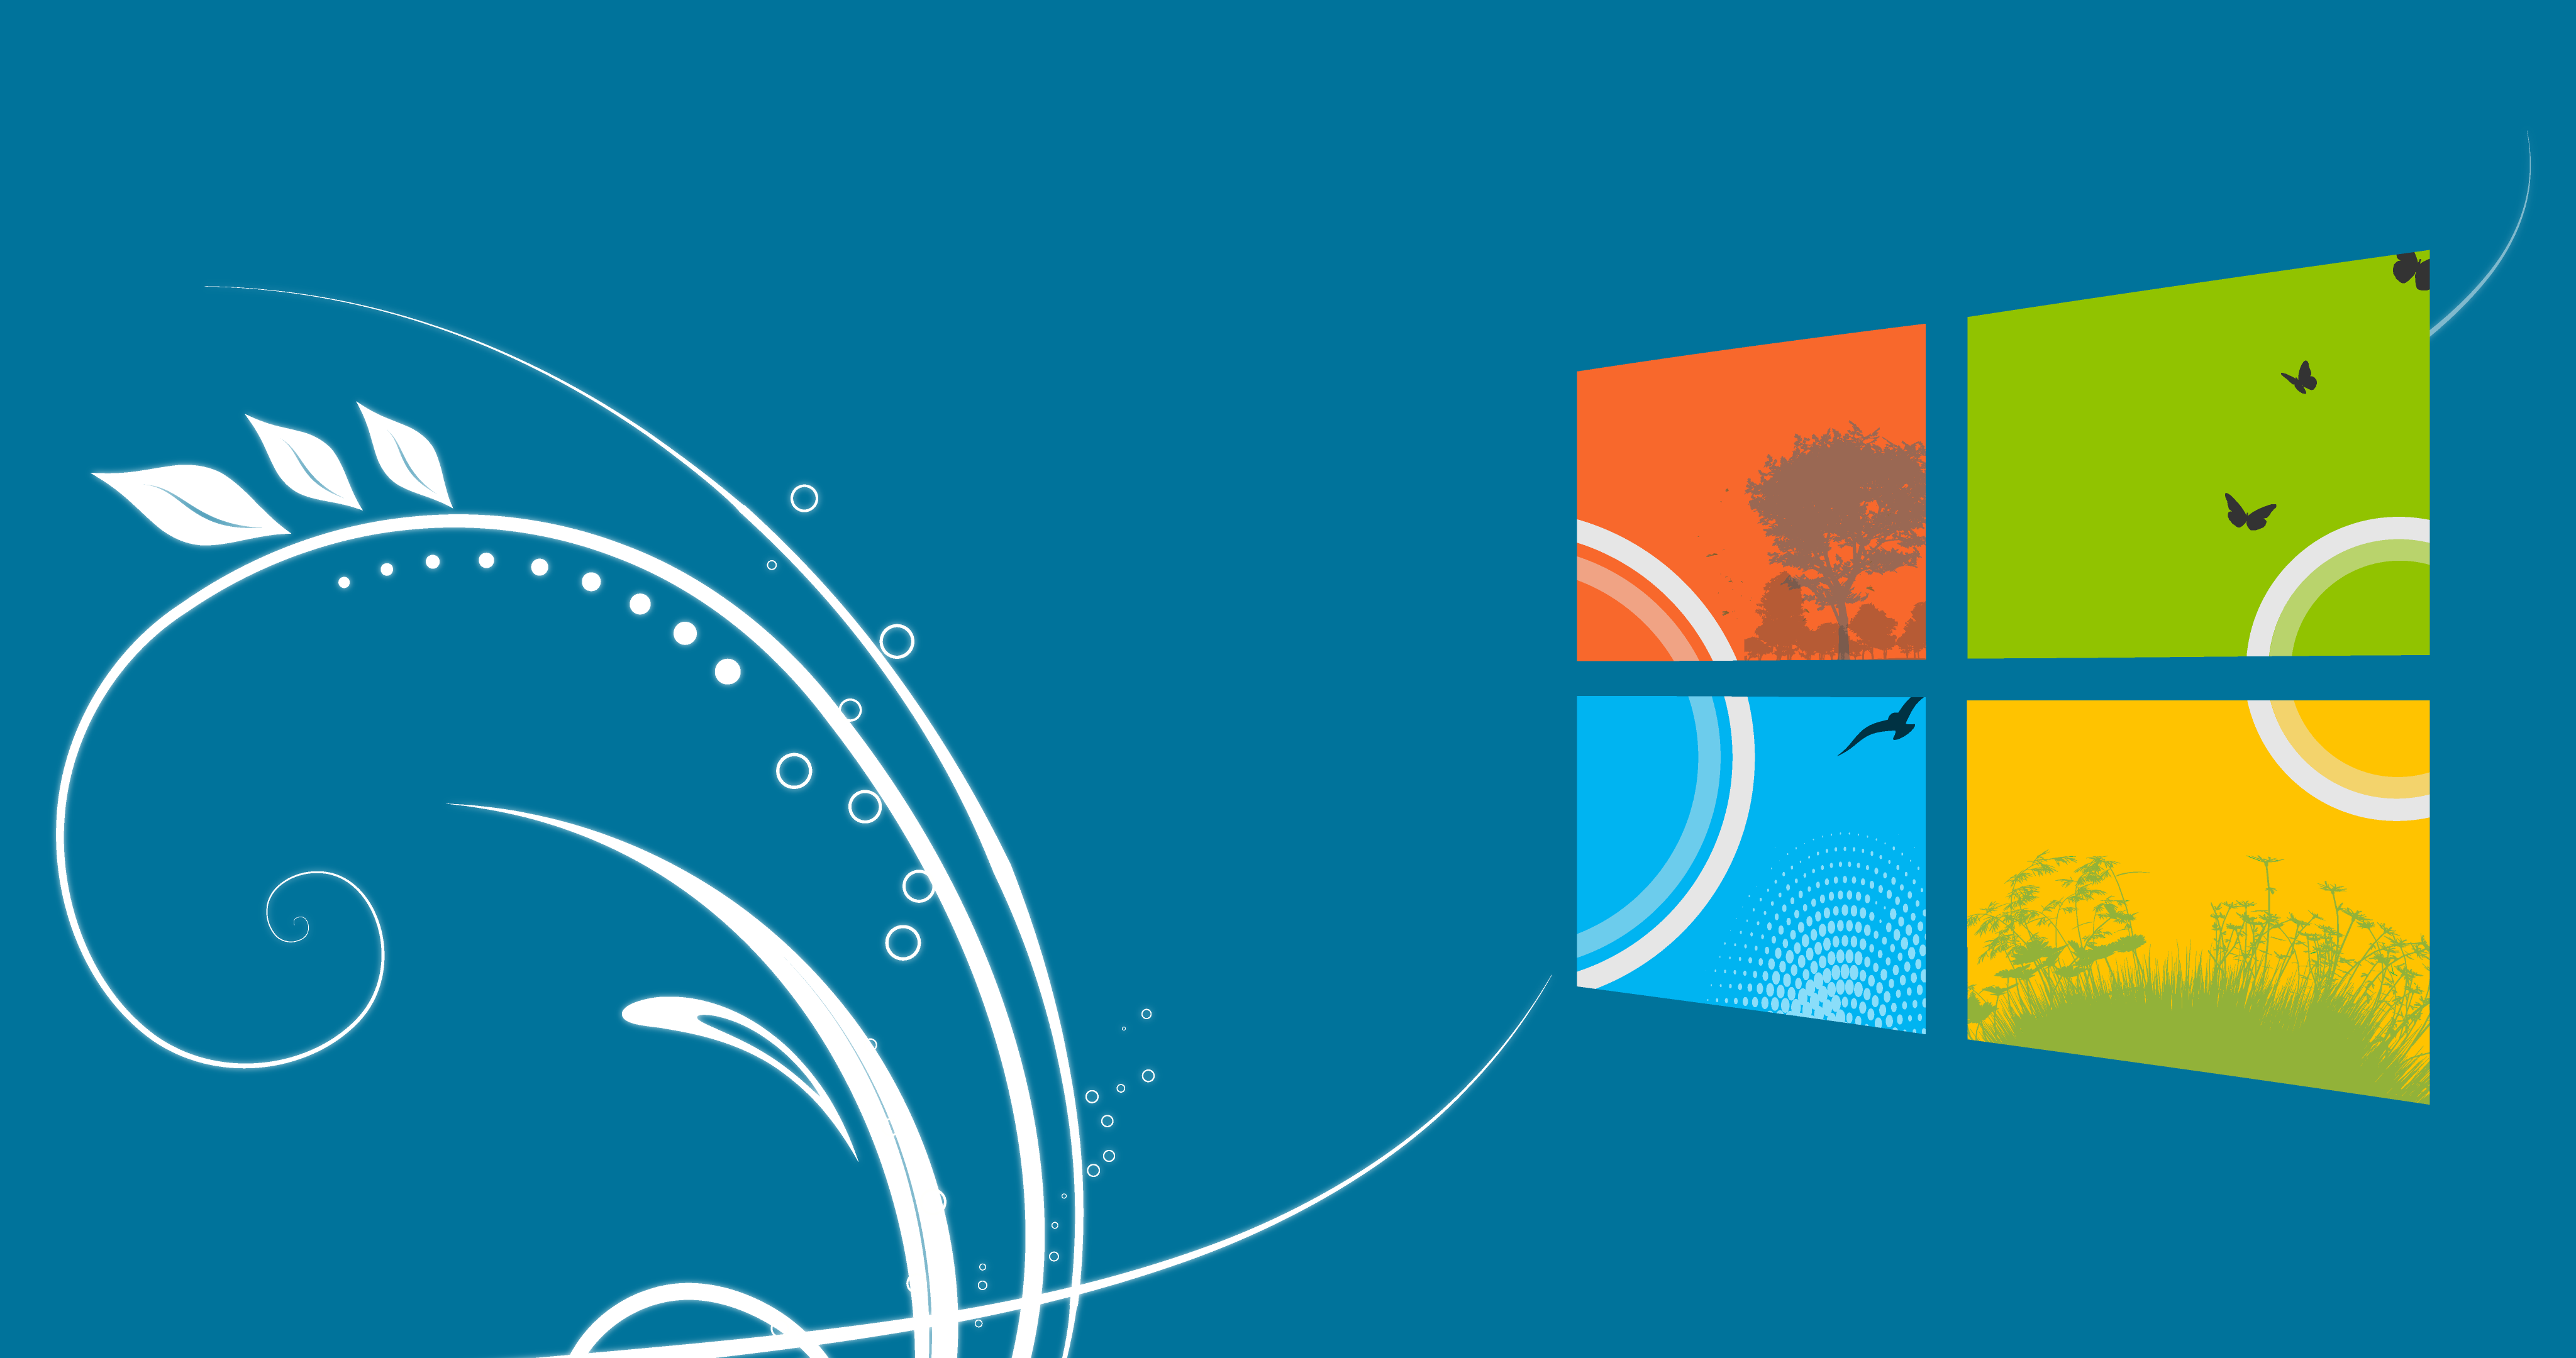 Chuyển sang Windows 10 với những hình nền sáng tạo và độc đáo, bạn sẽ không chỉ được trải nghiệm hệ điều hành hiện đại mà còn tạo được không khí mới mẻ cho máy tính của mình. Hãy xem các hình ảnh liên quan để chọn lựa được một bộ hình nền ưng ý nhất.